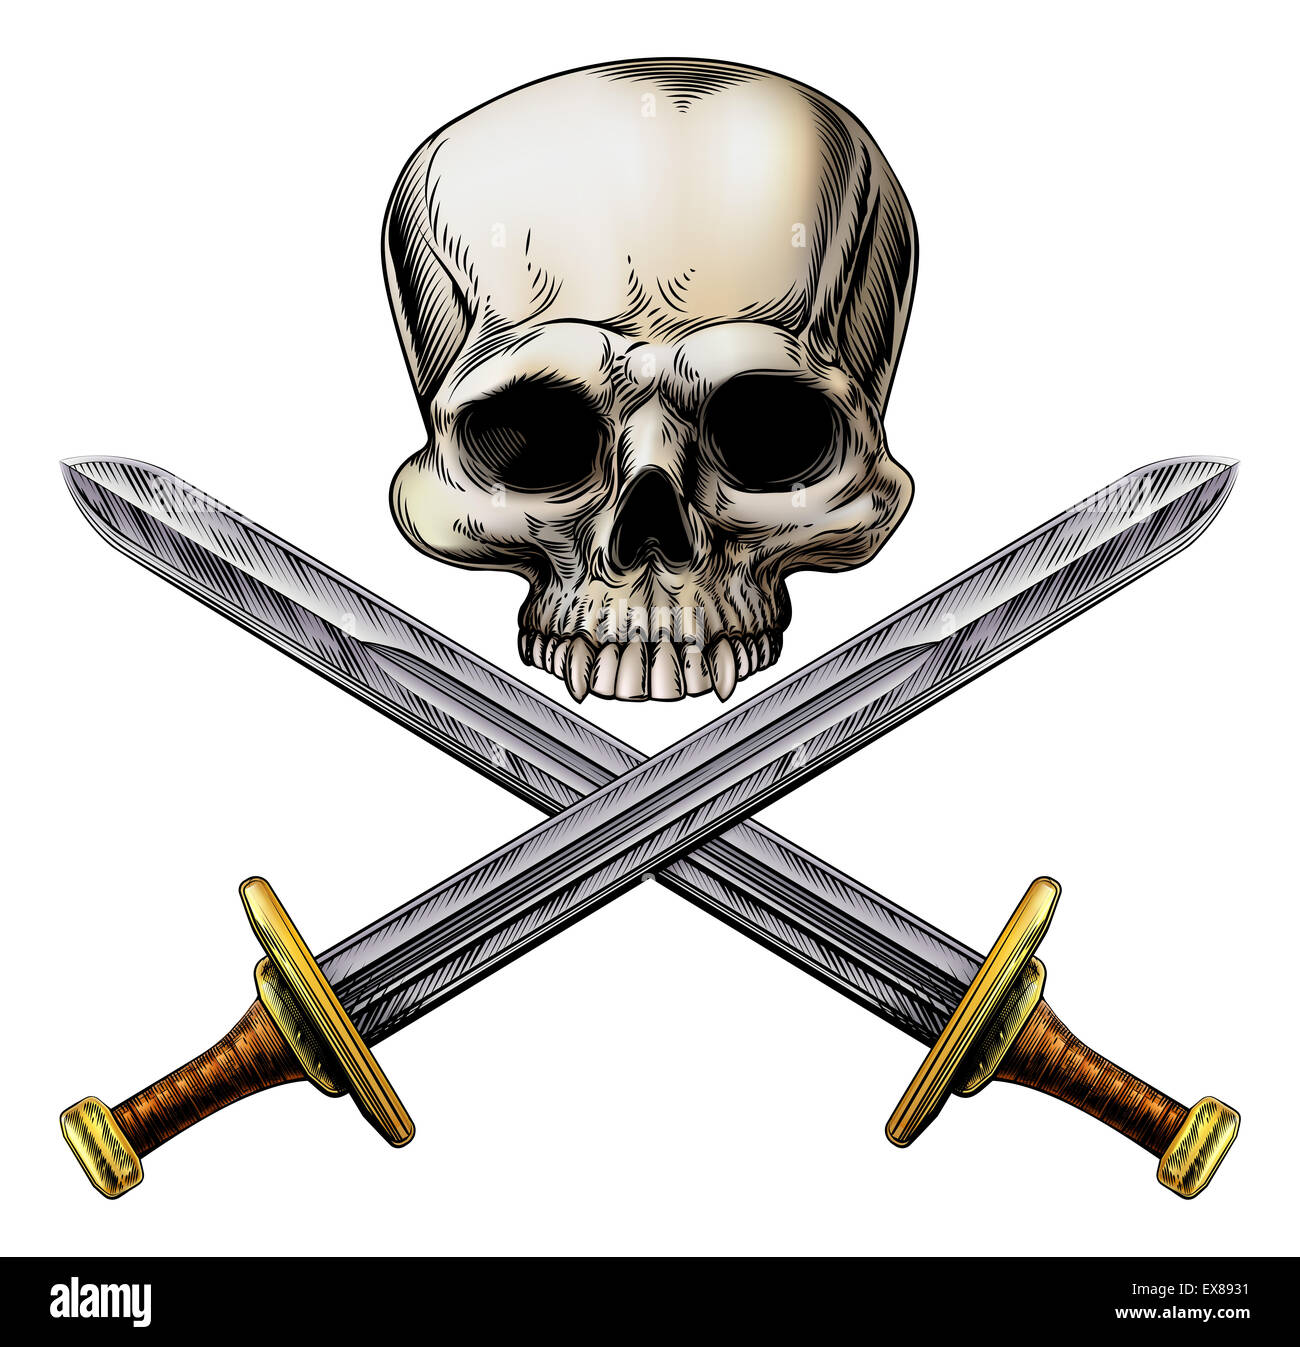 Un crâne humain et des épées croisées style pirate signe dans un style vintage sur bois Banque D'Images